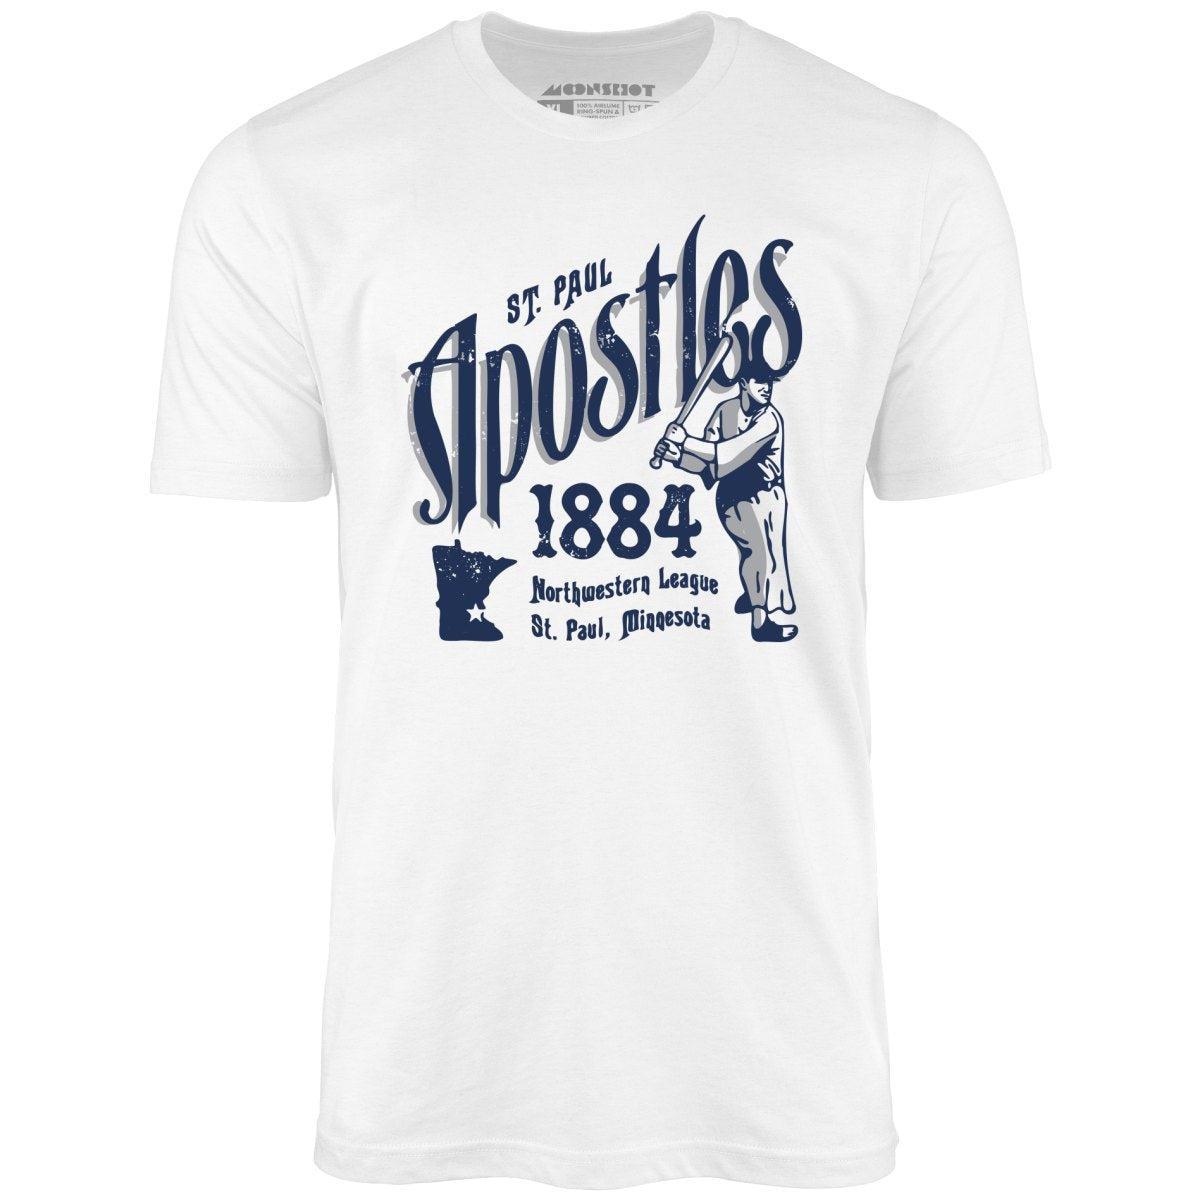 Saint Paul Apostles - Minnesota - Vintage Defunct Baseball Teams - Unisex T-Shirt